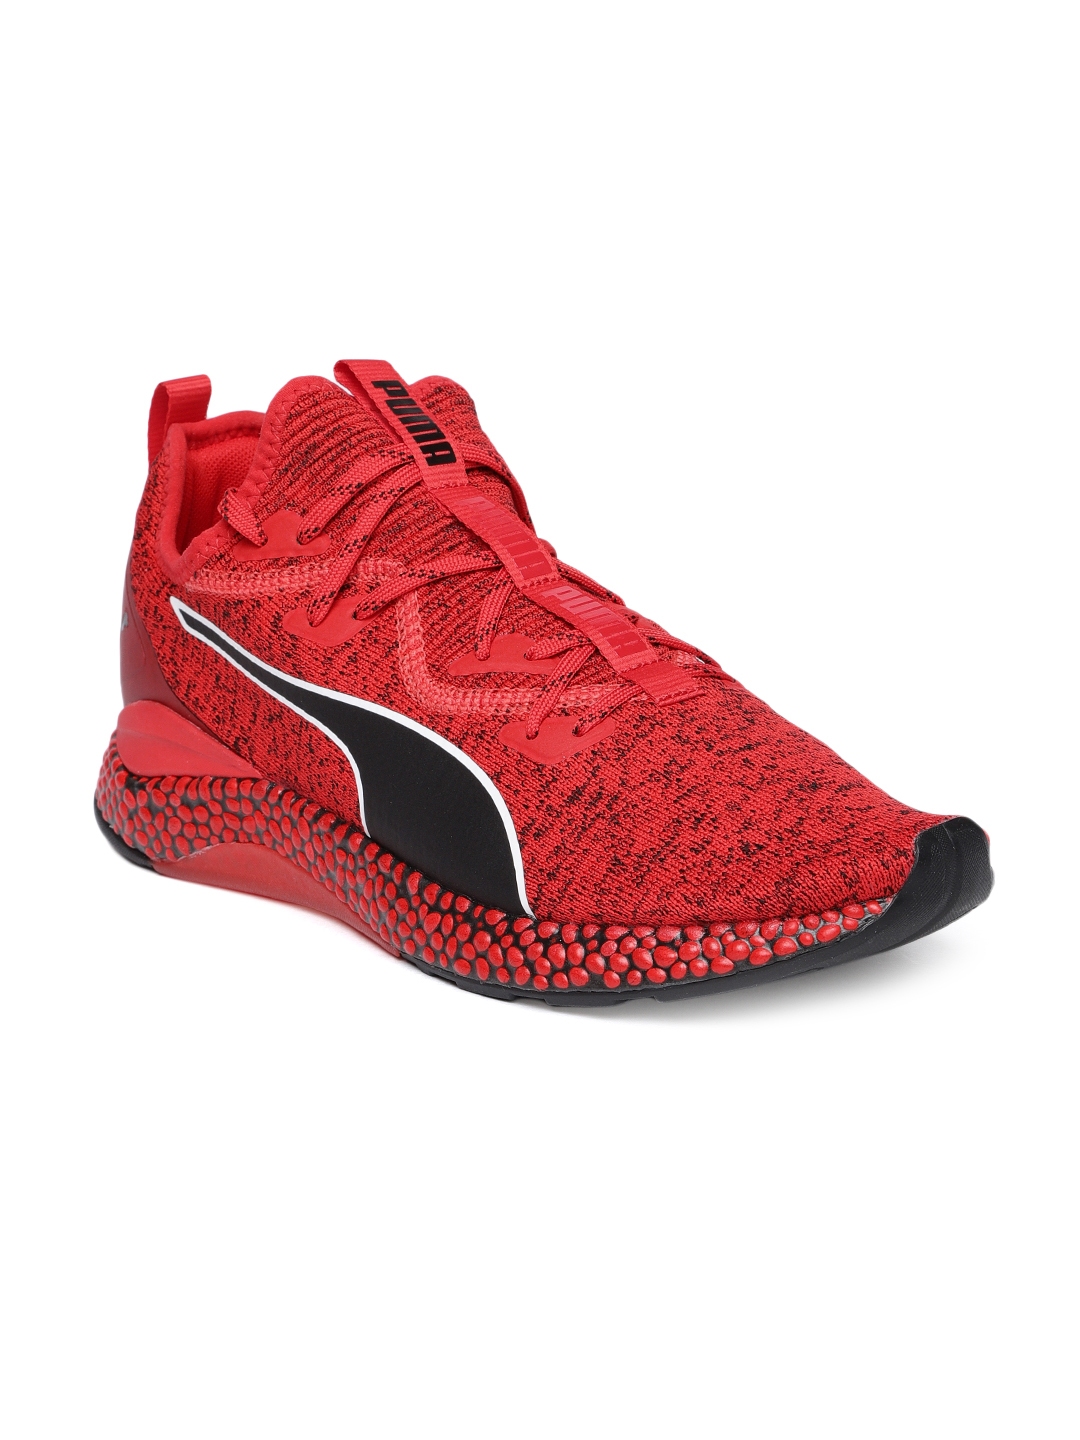 mens red puma shoes